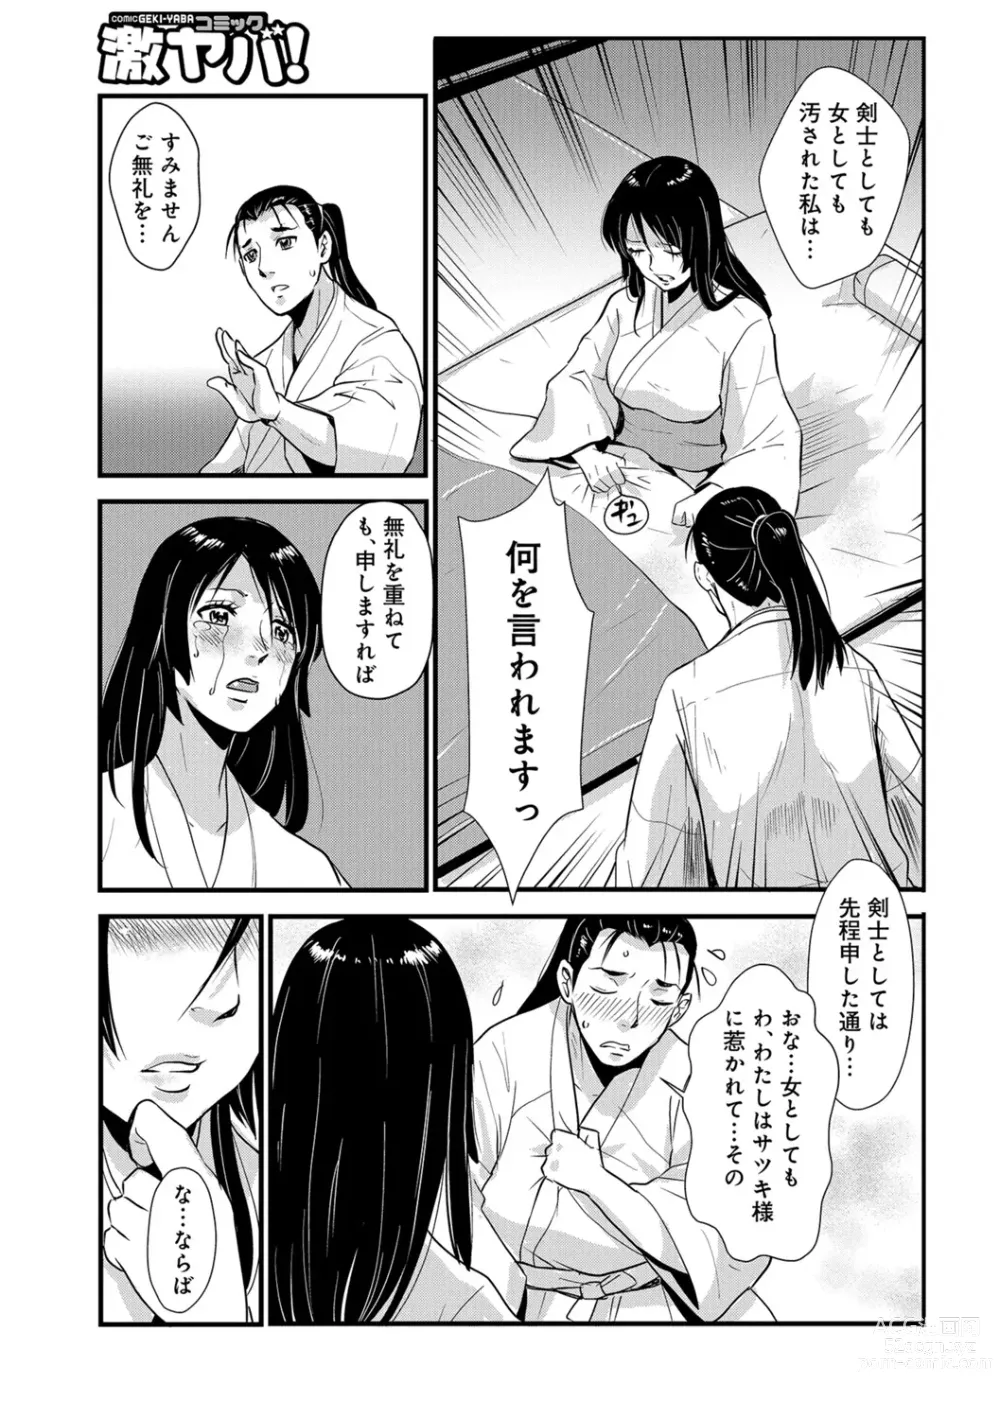 Page 3 of manga Harami samurai 08 ~Sugisarishi Renbou to Ichiya no Chigiri~